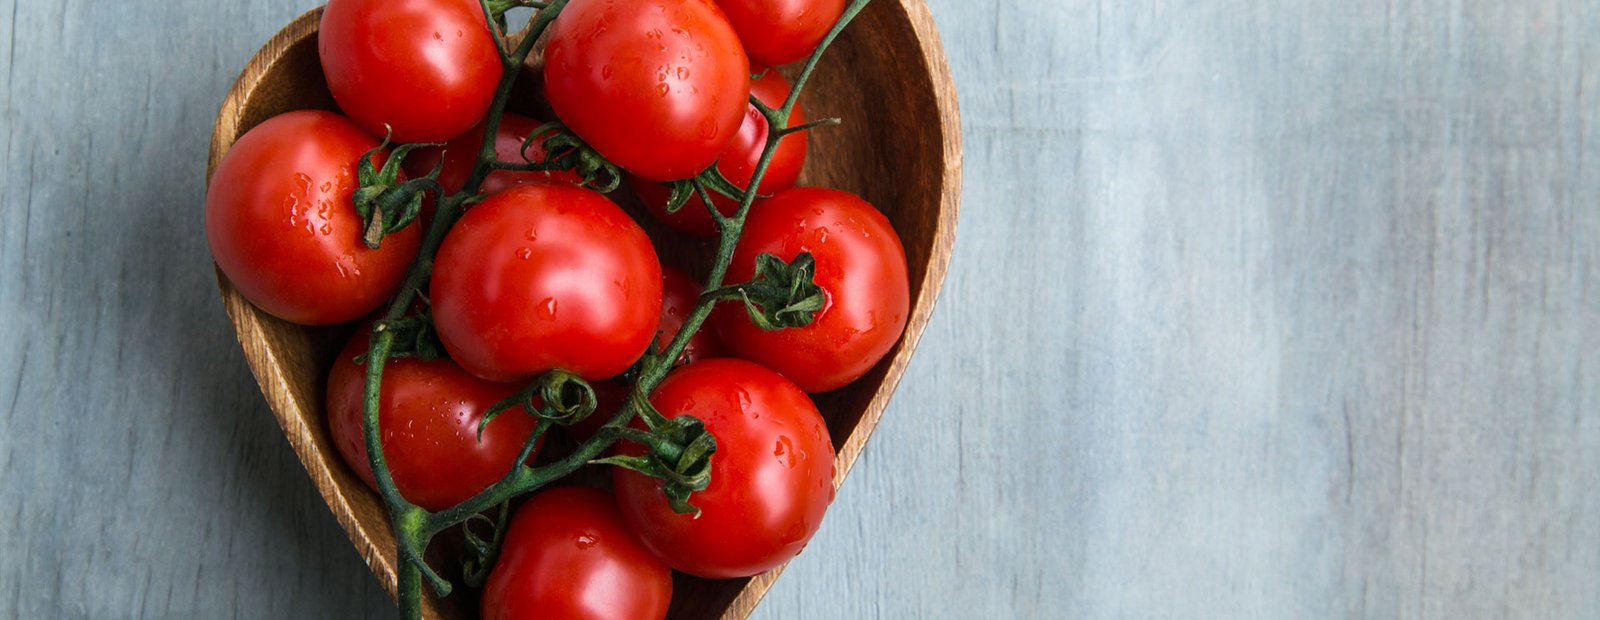 生、調理済み又は凝縮された丸薬トマトは心臓に良い